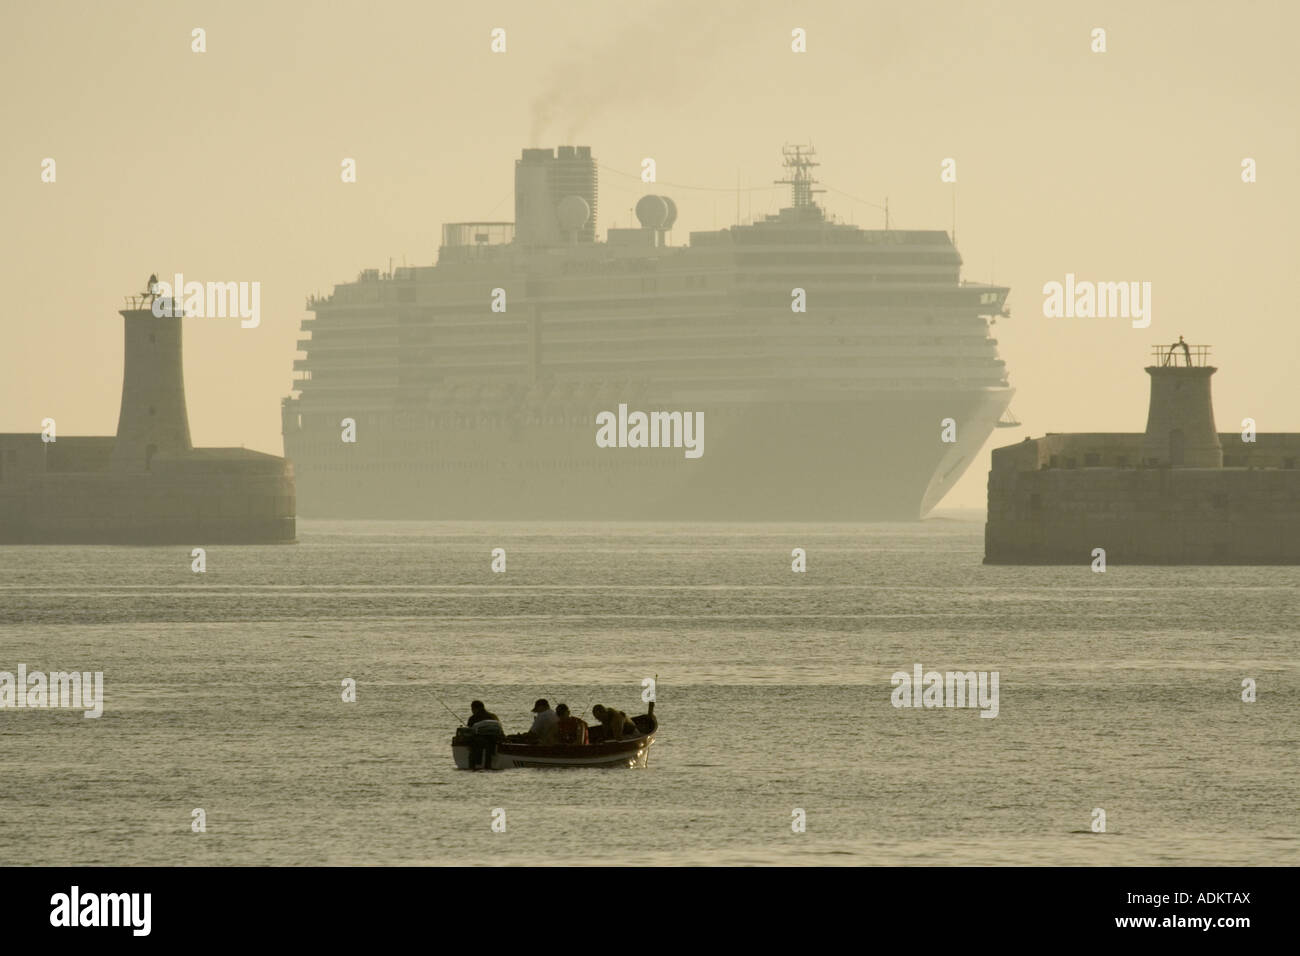 Viajes y turismo mediterráneo. Un crucero o camisas a punto de entrar en el gran puerto de Malta en la neblina del amanecer, con un barco pesquero en primer plano Foto de stock